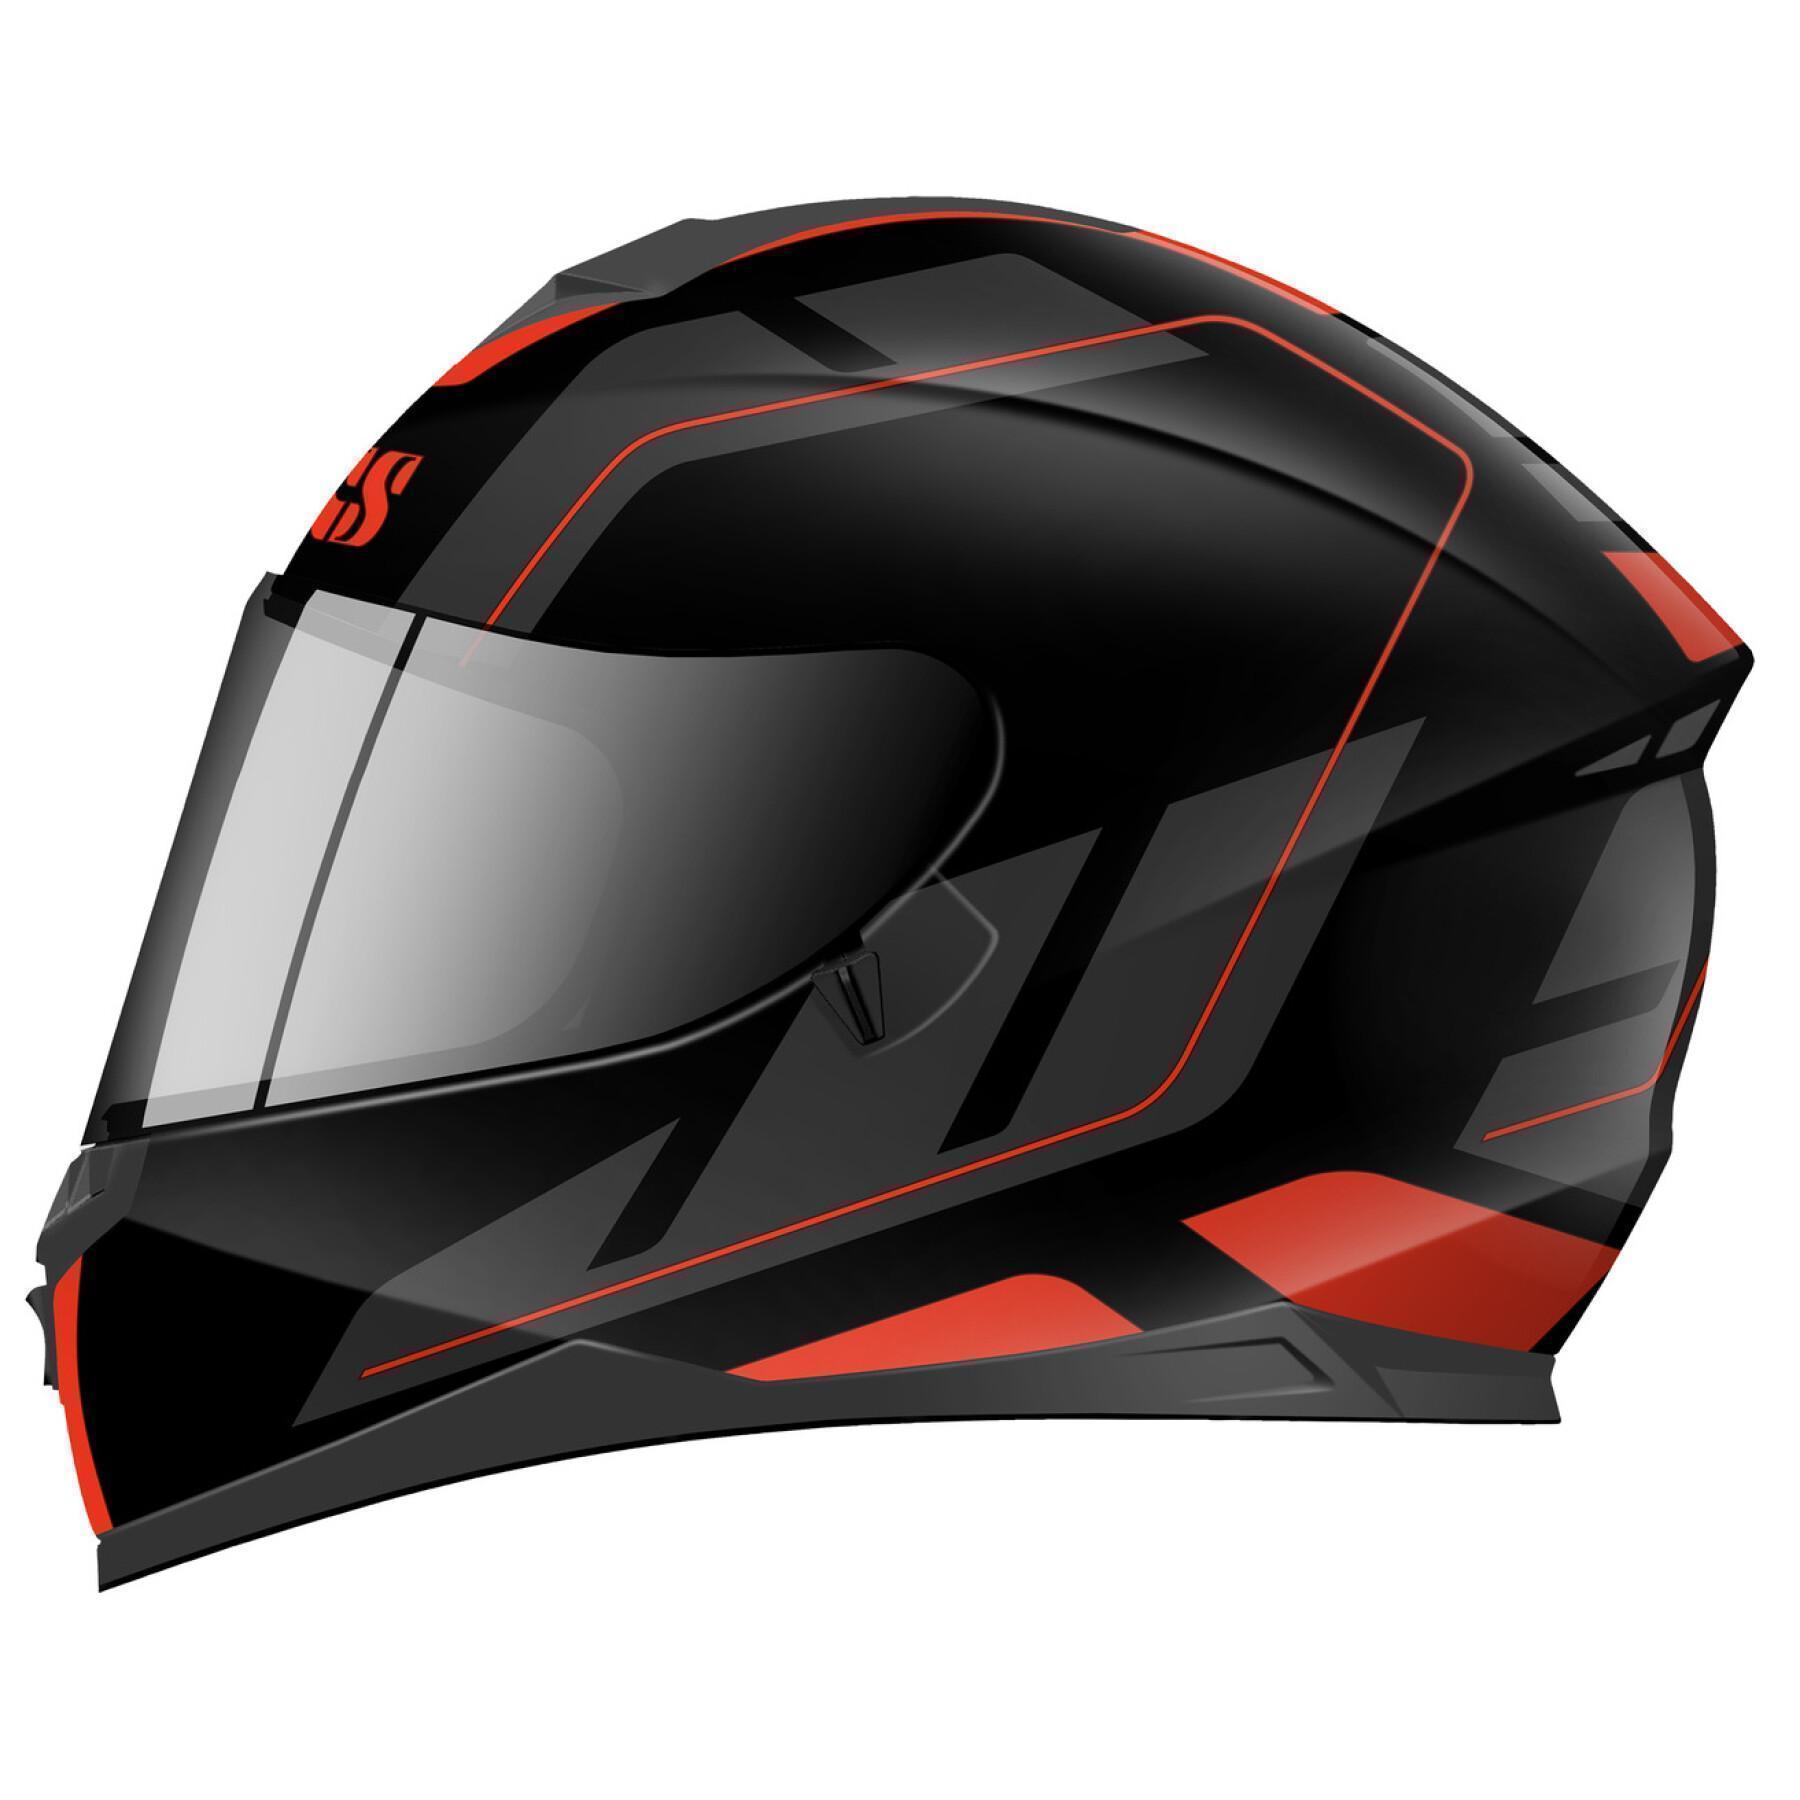 IXS 1100 2.3 Motorcycle Helmet Integral Helmet With Sun Visor 